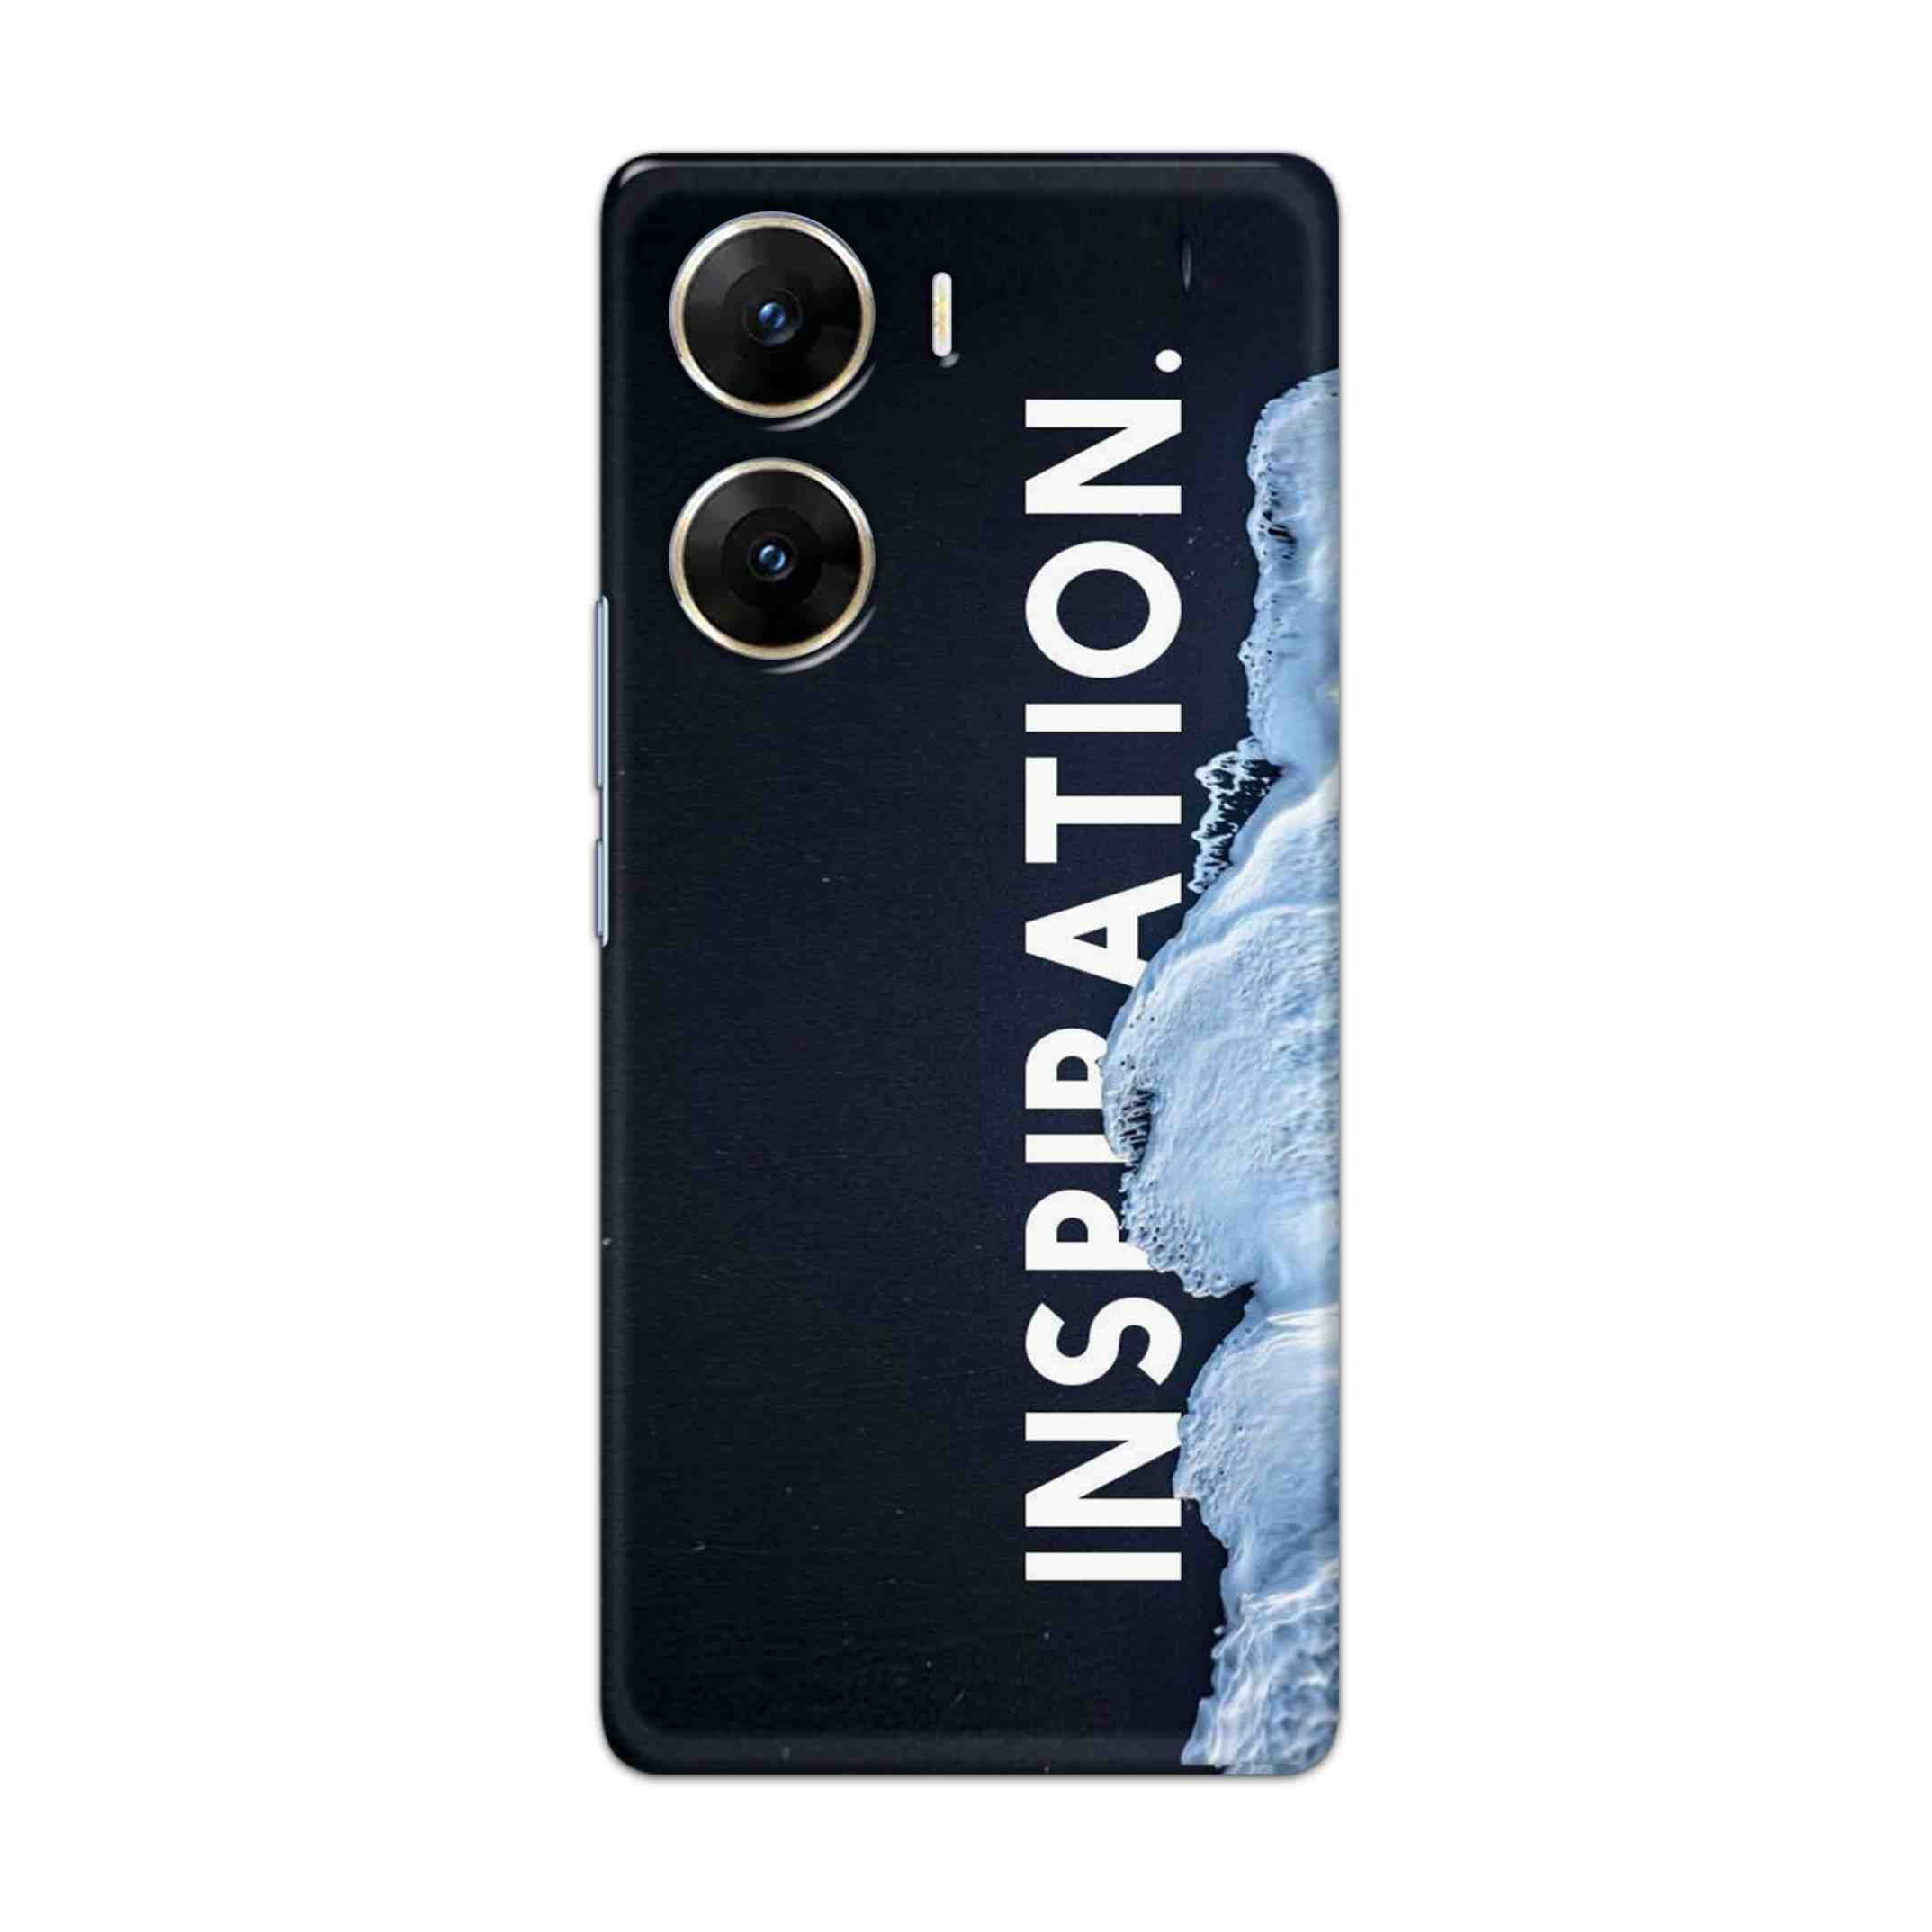 Buy Inspiration Hard Back Mobile Phone Case/Cover For Vivo V29e Online